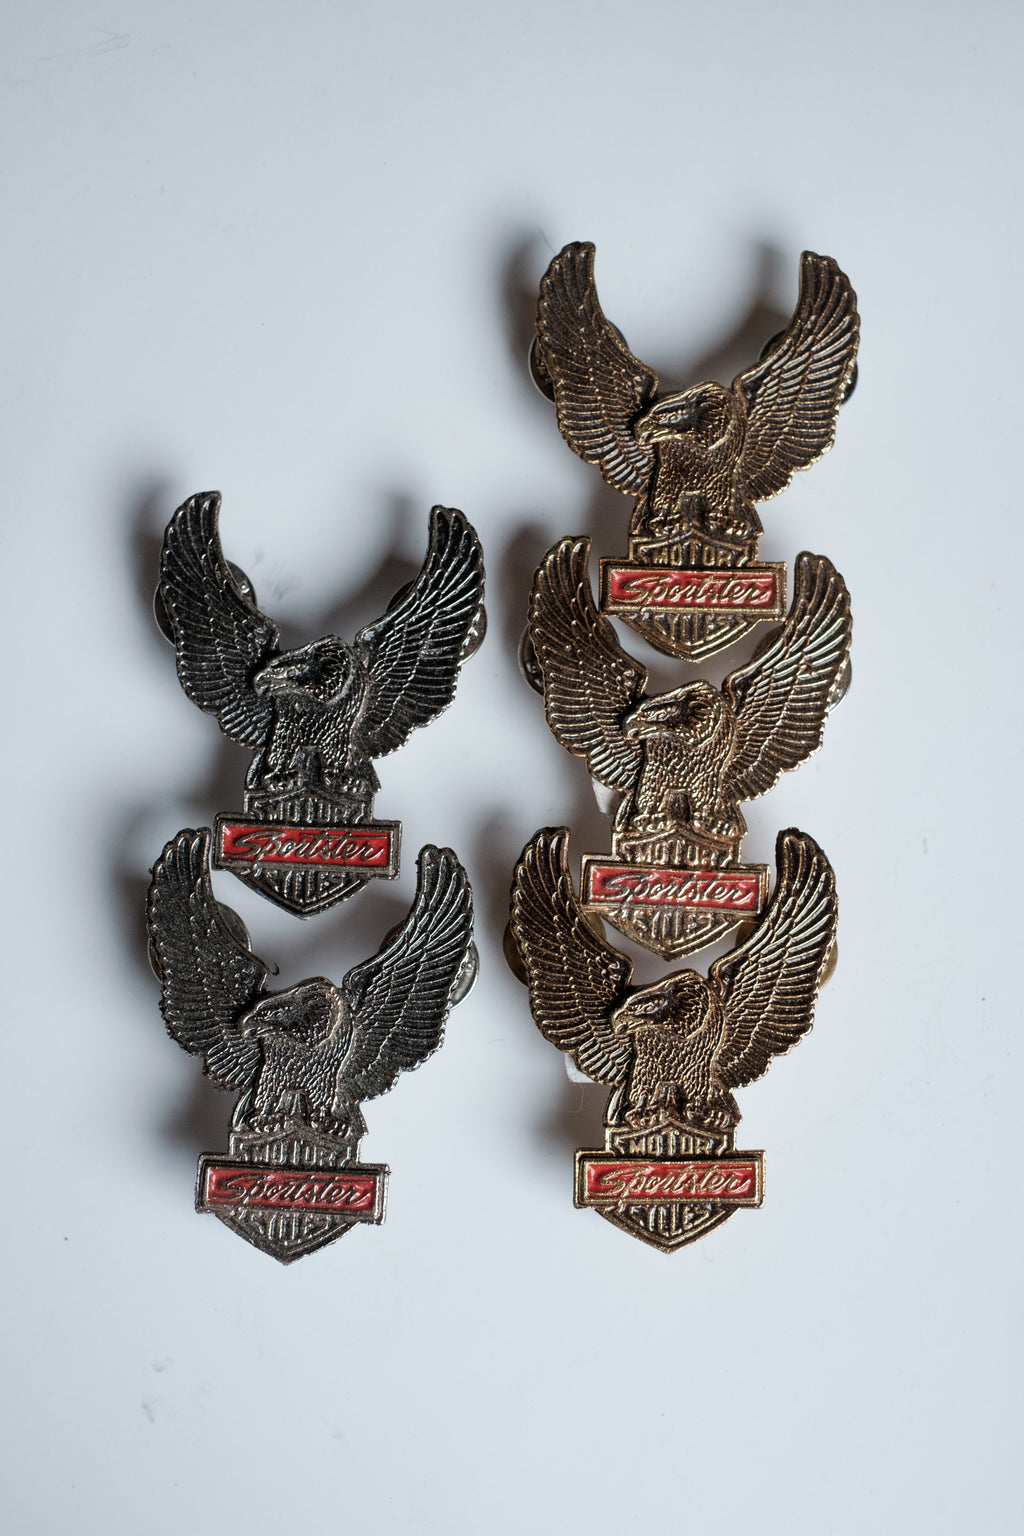 Vintage Harley Davidson Classic Sportster Eagle Pin